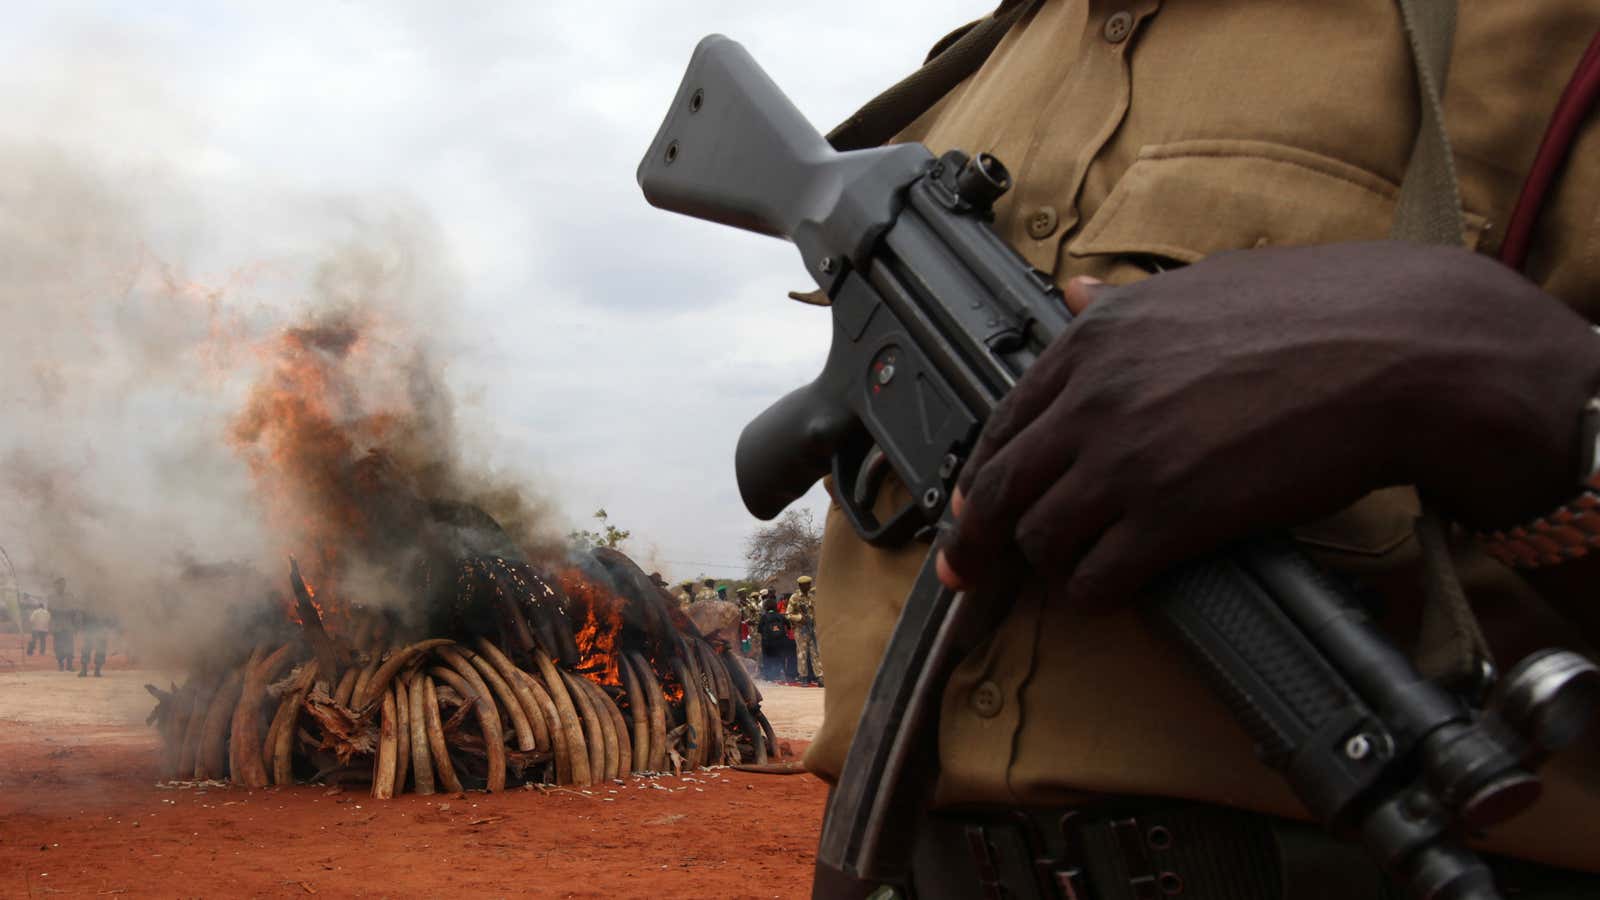 Destroying poached tusks in Kenya.